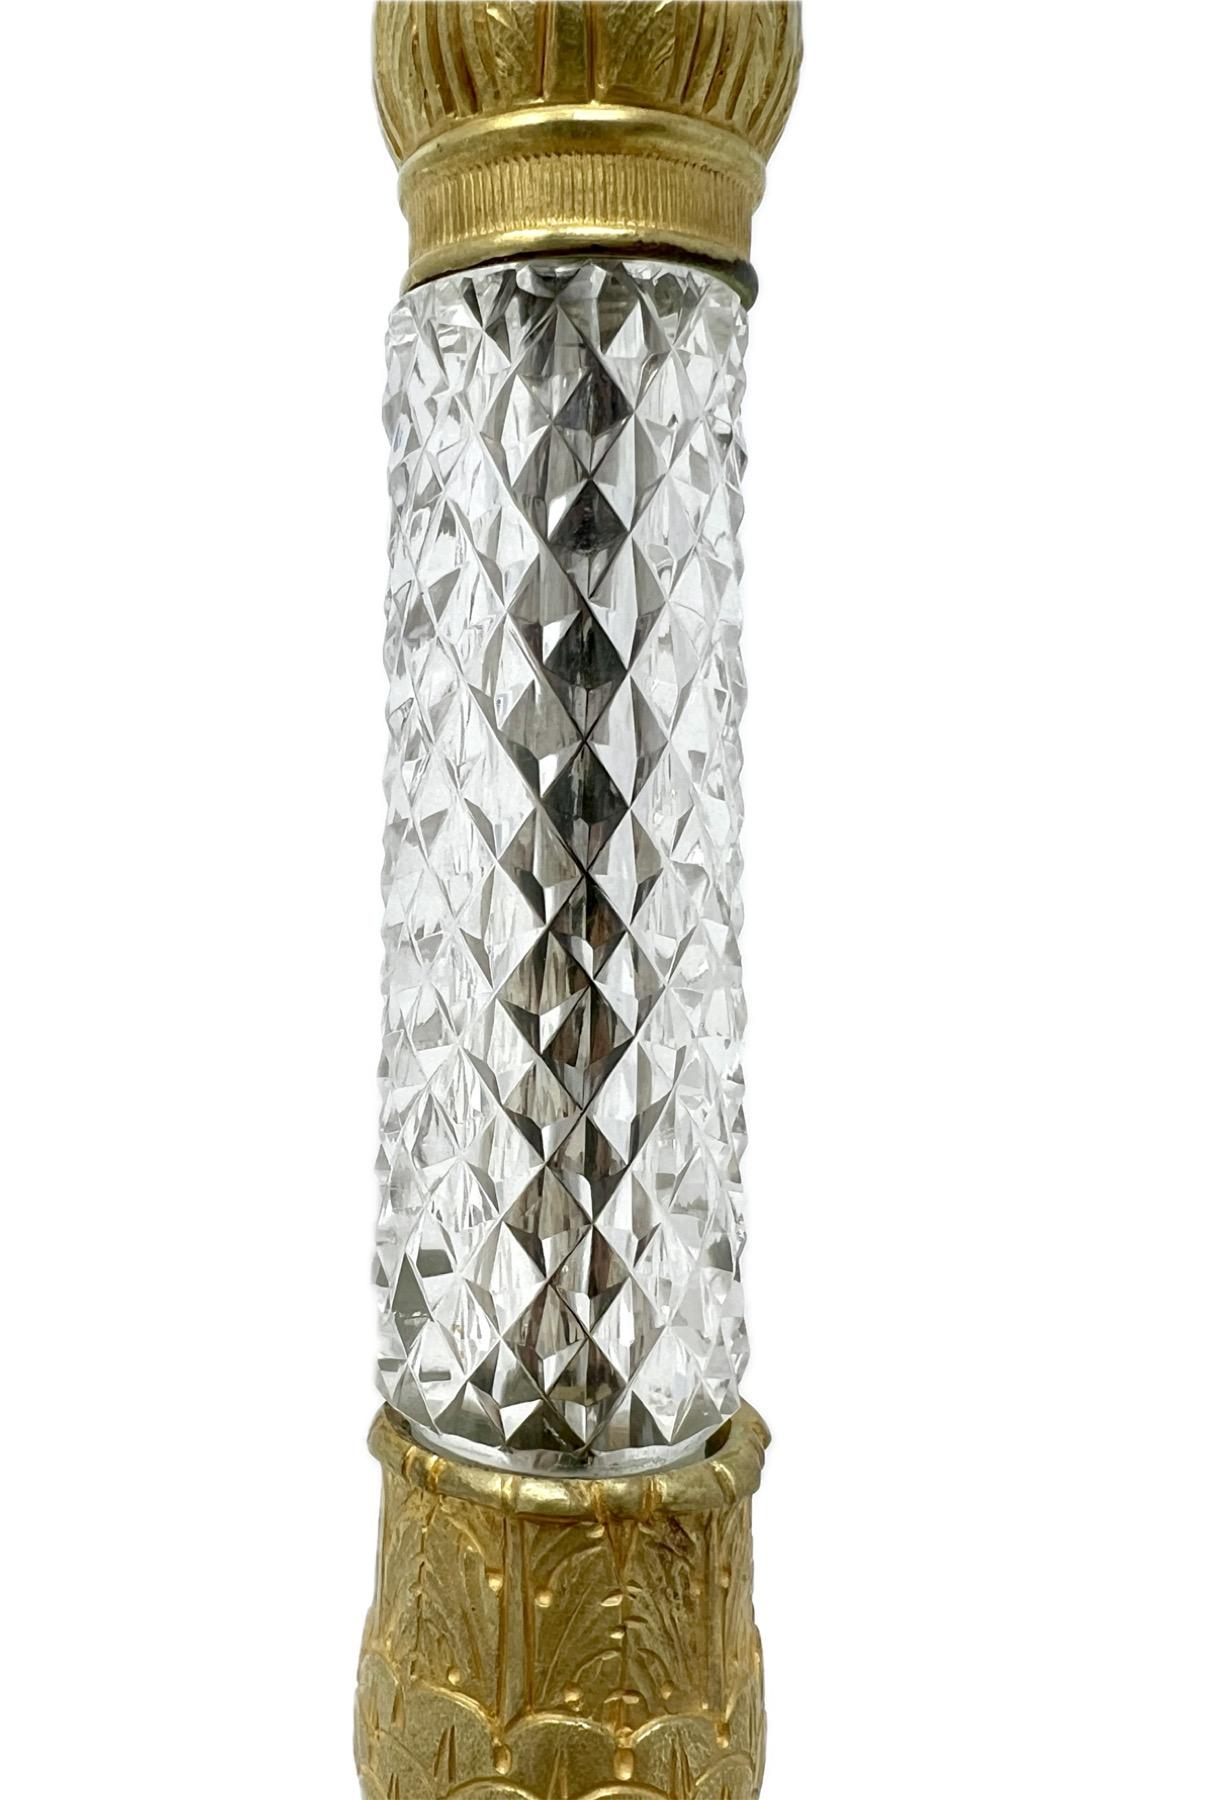 Français Paire de chandeliers anciens en bronze doré et cristal taillé, vers 1890. en vente